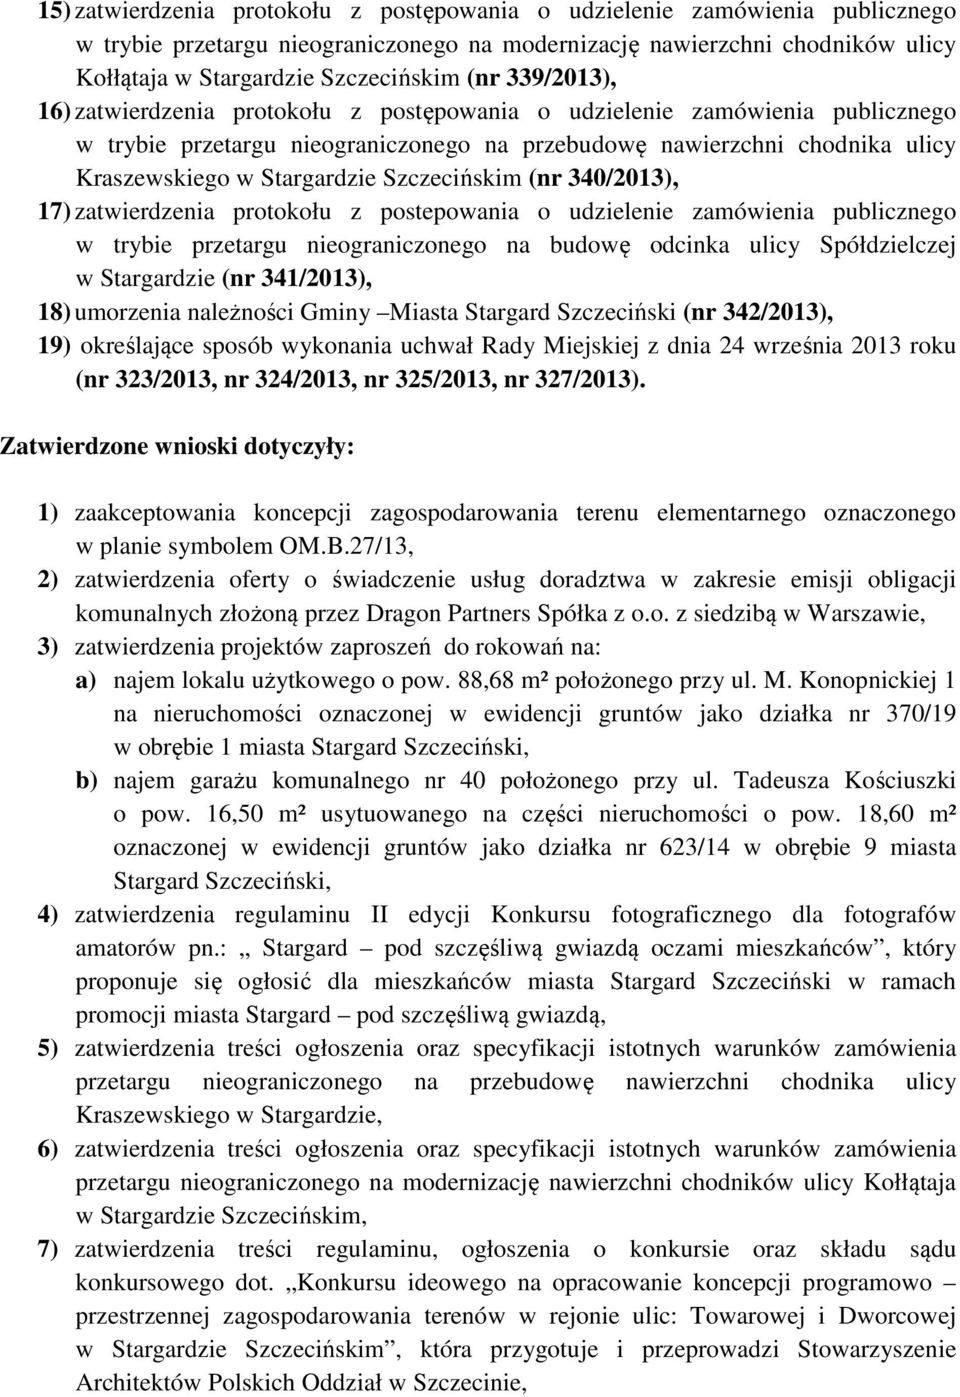 Szczecińskim (nr 340/2013), 17) zatwierdzenia protokołu z postepowania o udzielenie zamówienia publicznego w trybie przetargu nieograniczonego na budowę odcinka ulicy Spółdzielczej w Stargardzie (nr